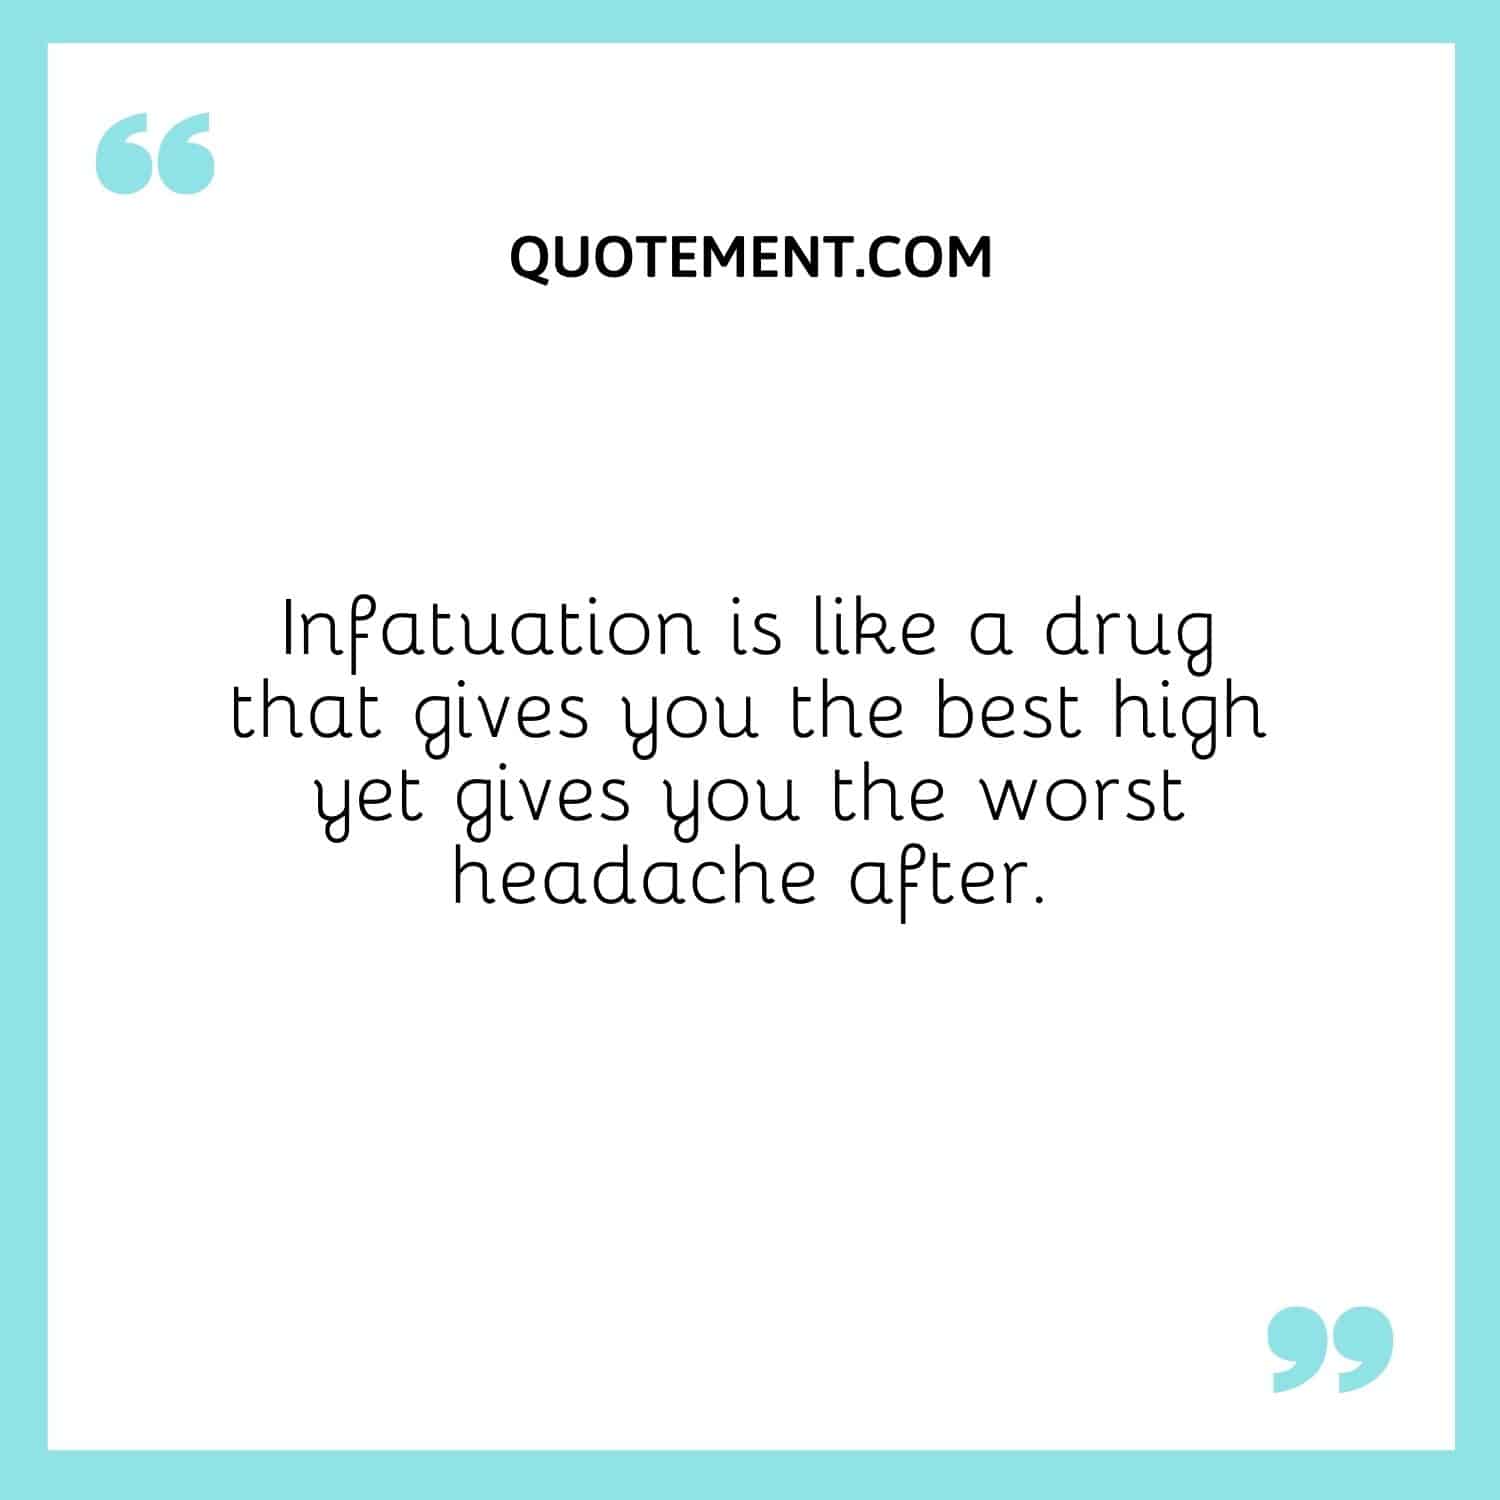 Infatuation is like a drug